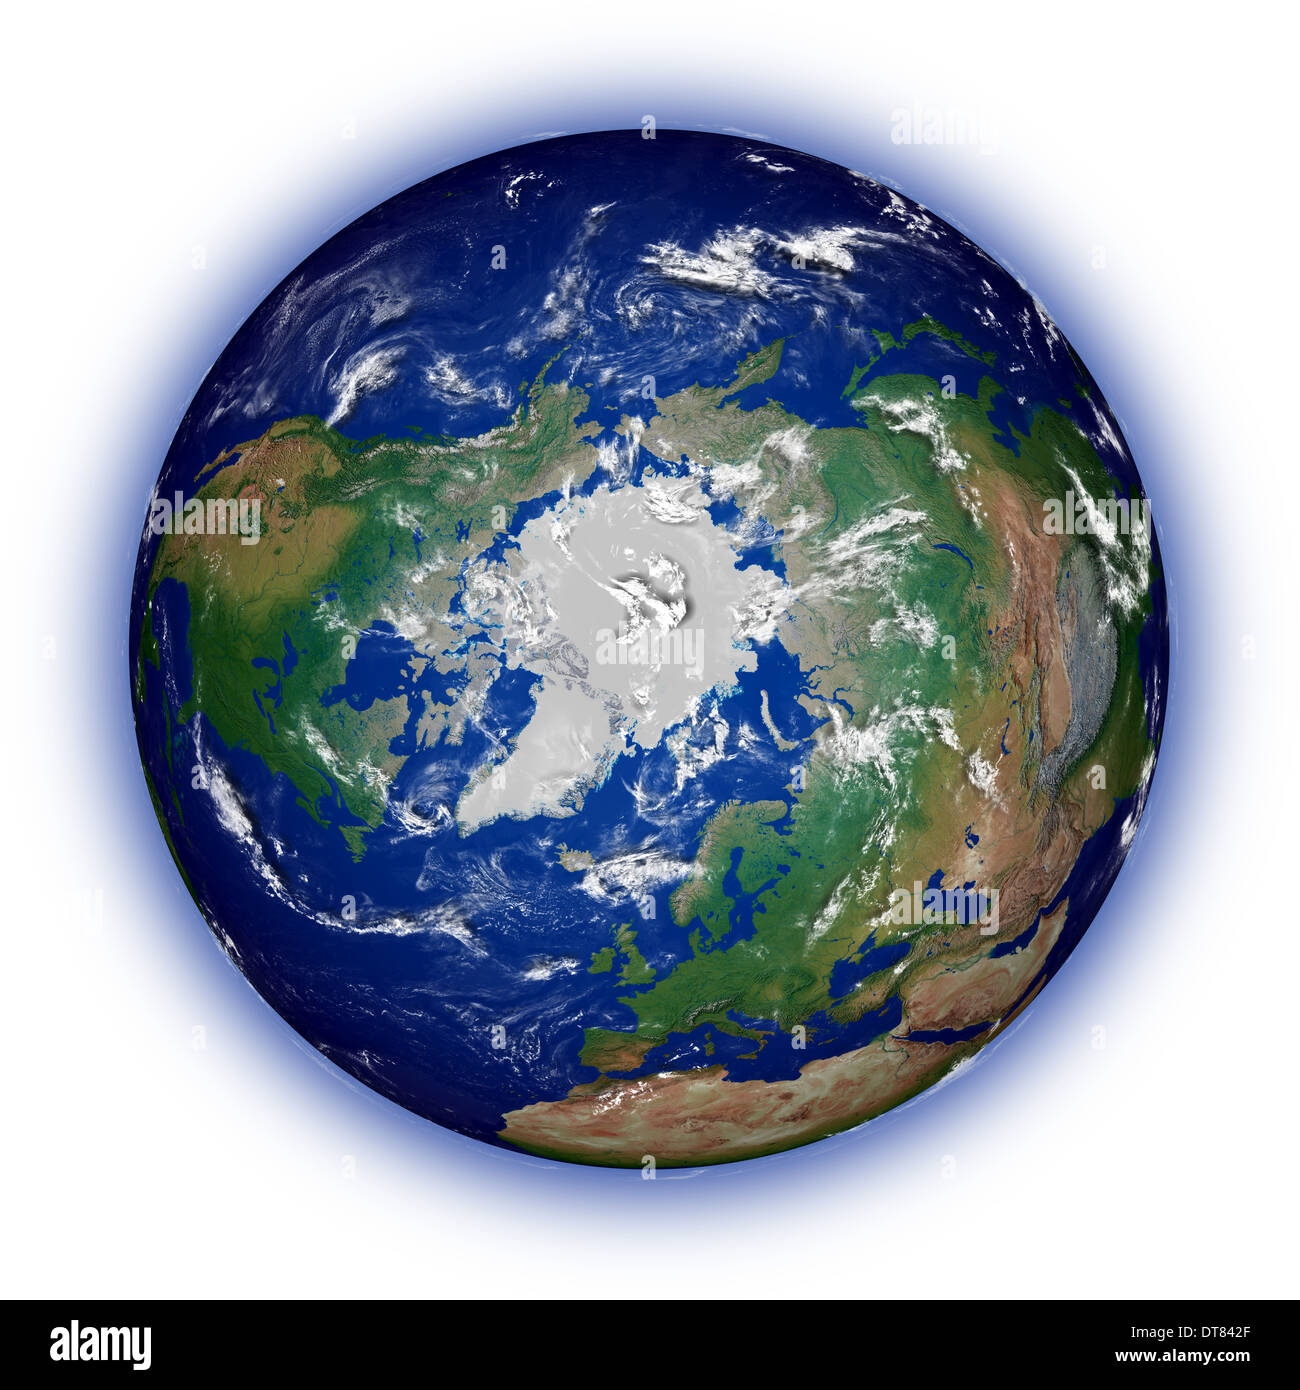 Nordhalbkugel der Erde von oben Nordpol isoliert auf weißem Hintergrund gesehen. Mit hohem Detailgrad Planetenoberfläche. Elemente des Bildes von der NASA eingerichtet. Stockfoto